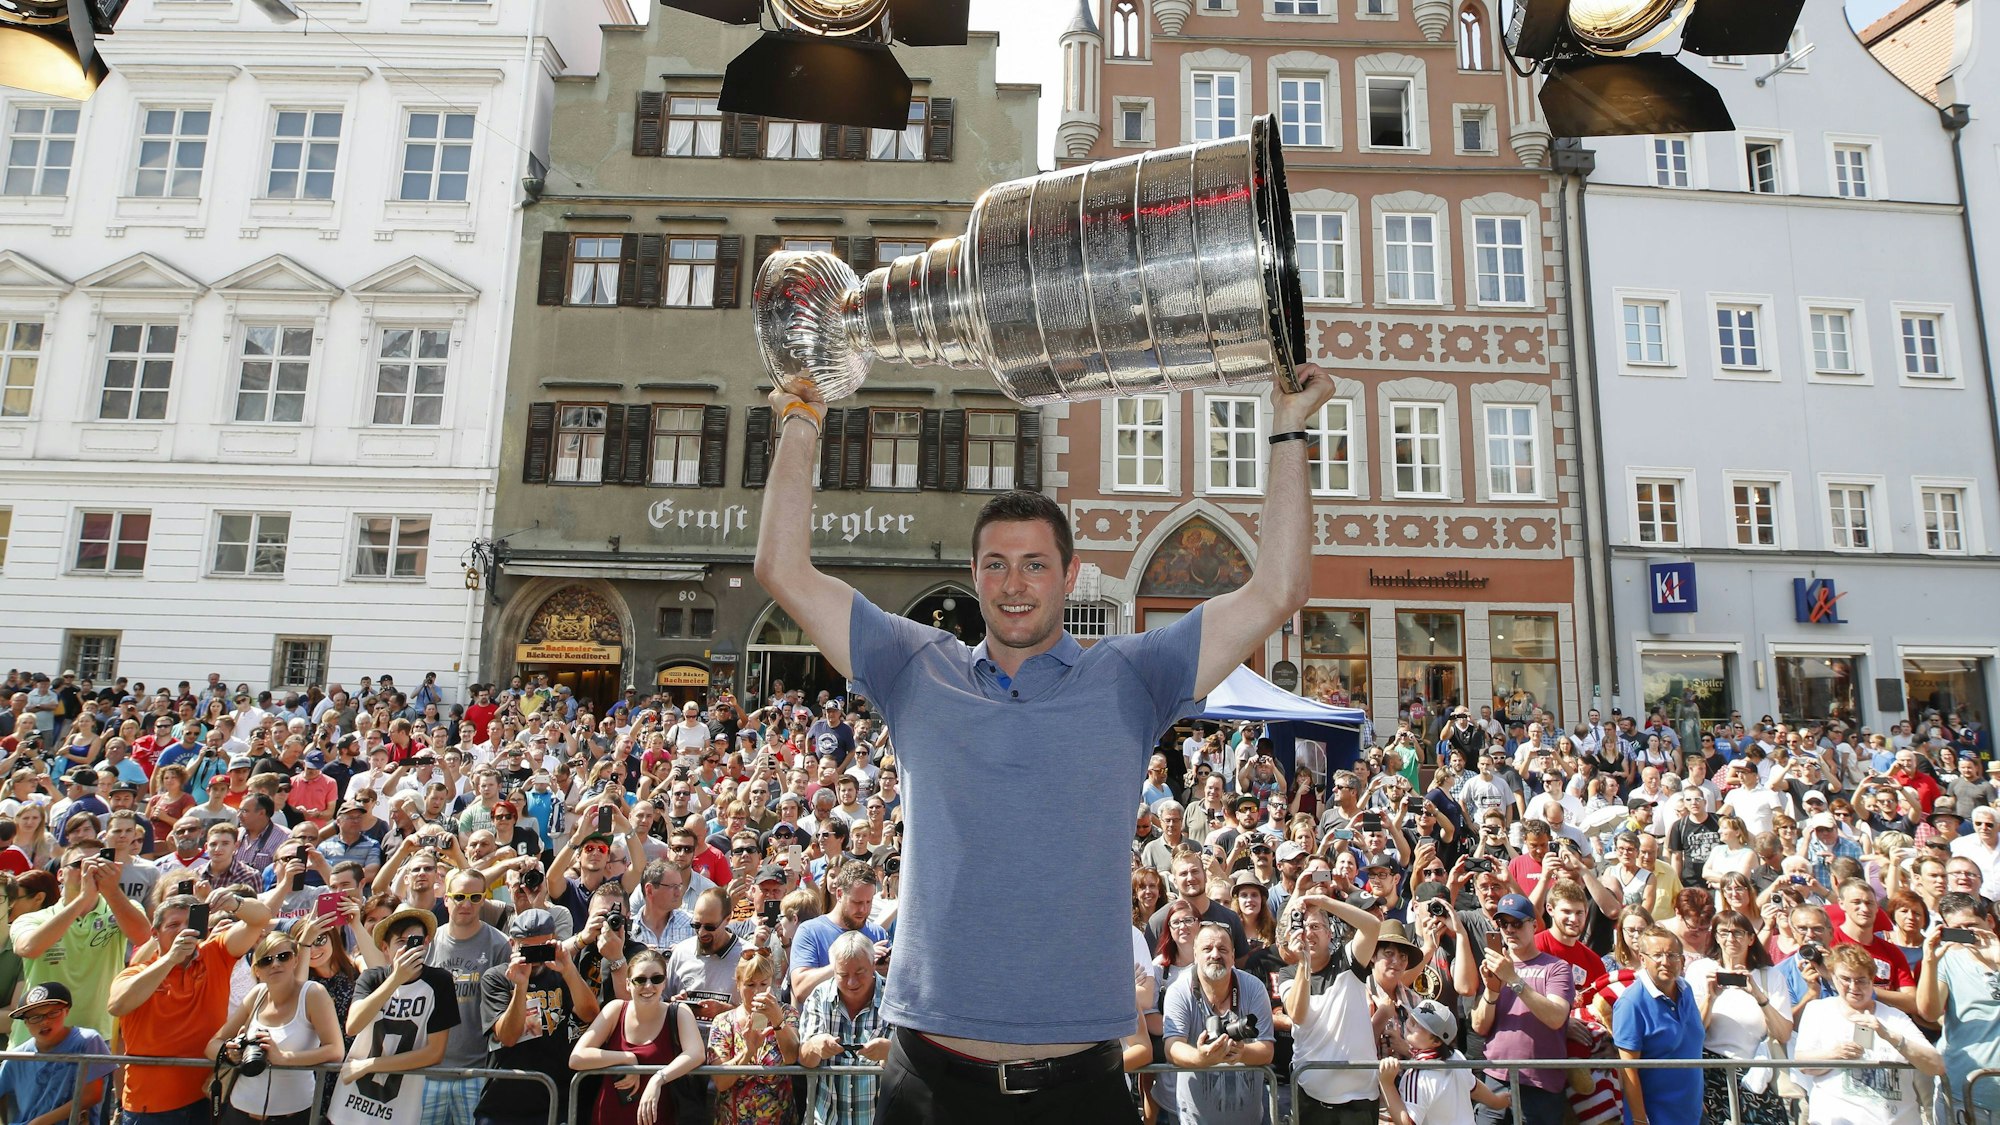 Der deutsche Eishockey-Profi Tom Kühnhackl hält vor einem großen Publikum in Landshut die Stanley-Cup-Trophäe in die Luft.